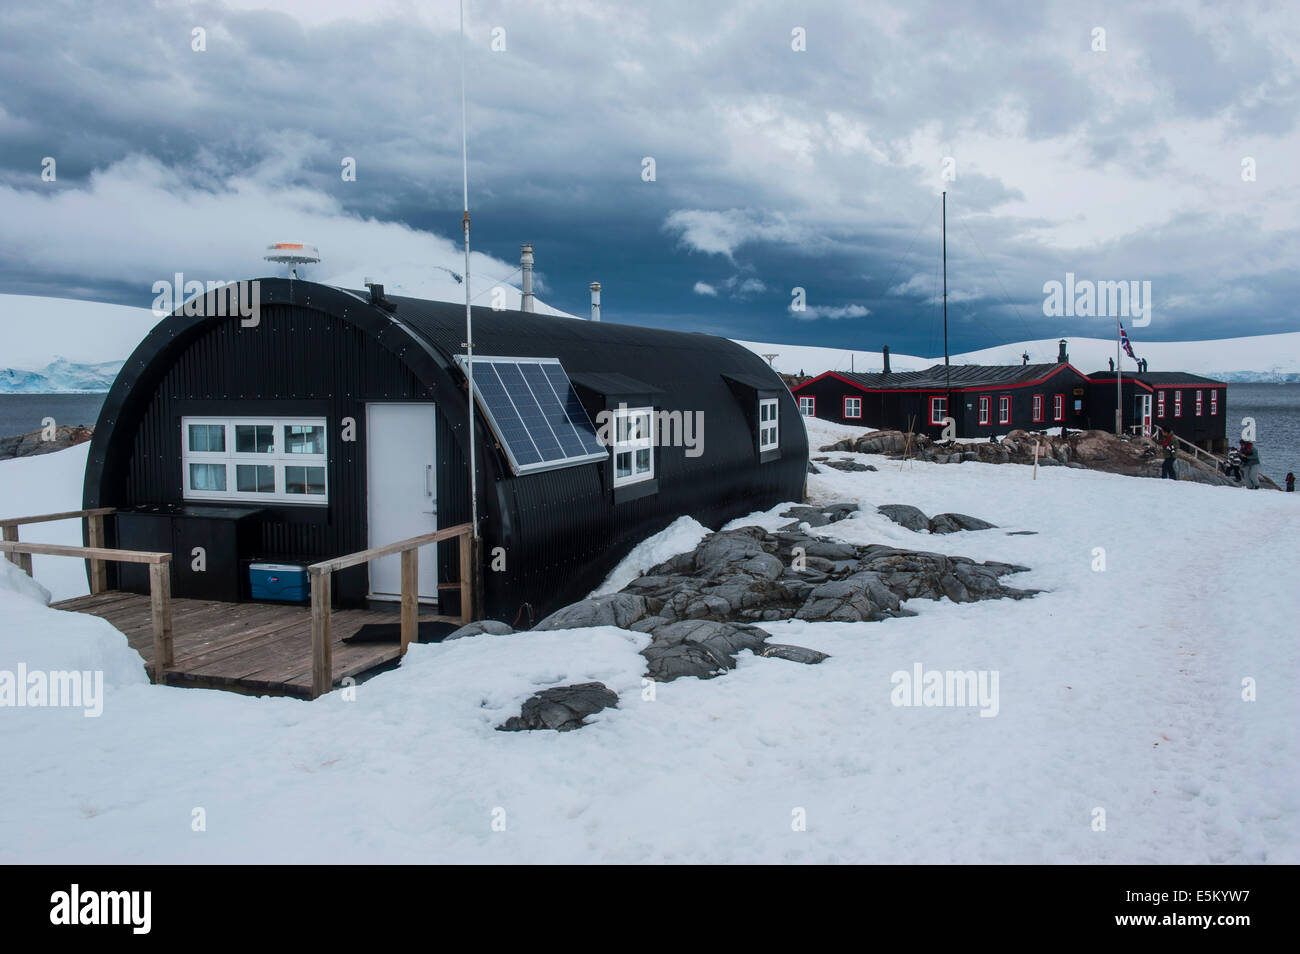 Puerto Lockroy Research Station, hoy museo, Wiencke, Archipiélago Palmer, en la Antártida Foto de stock